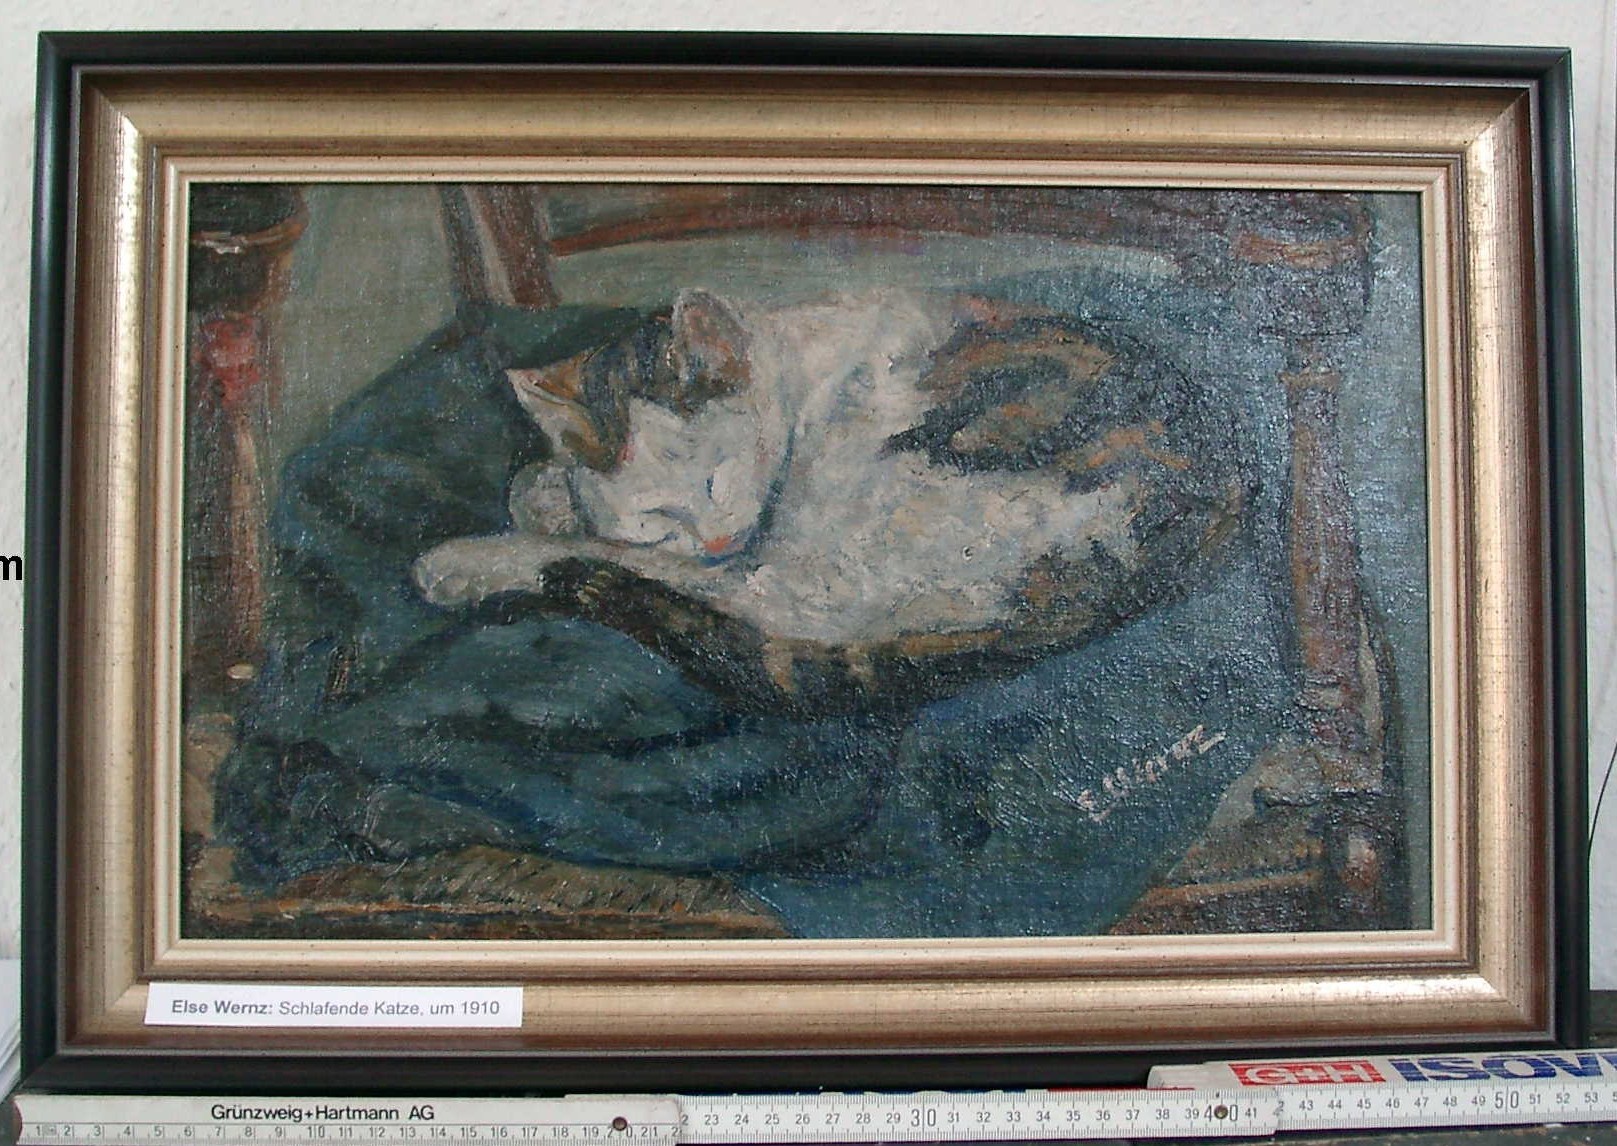 Bild; Ölgemälde: "Schlafende Katze"; Else Wernz; um 1910 (Stadtmuseum Bad Dürkheim, Museumsgesellschaft Bad Dürkheim e.V. CC BY-NC-SA)